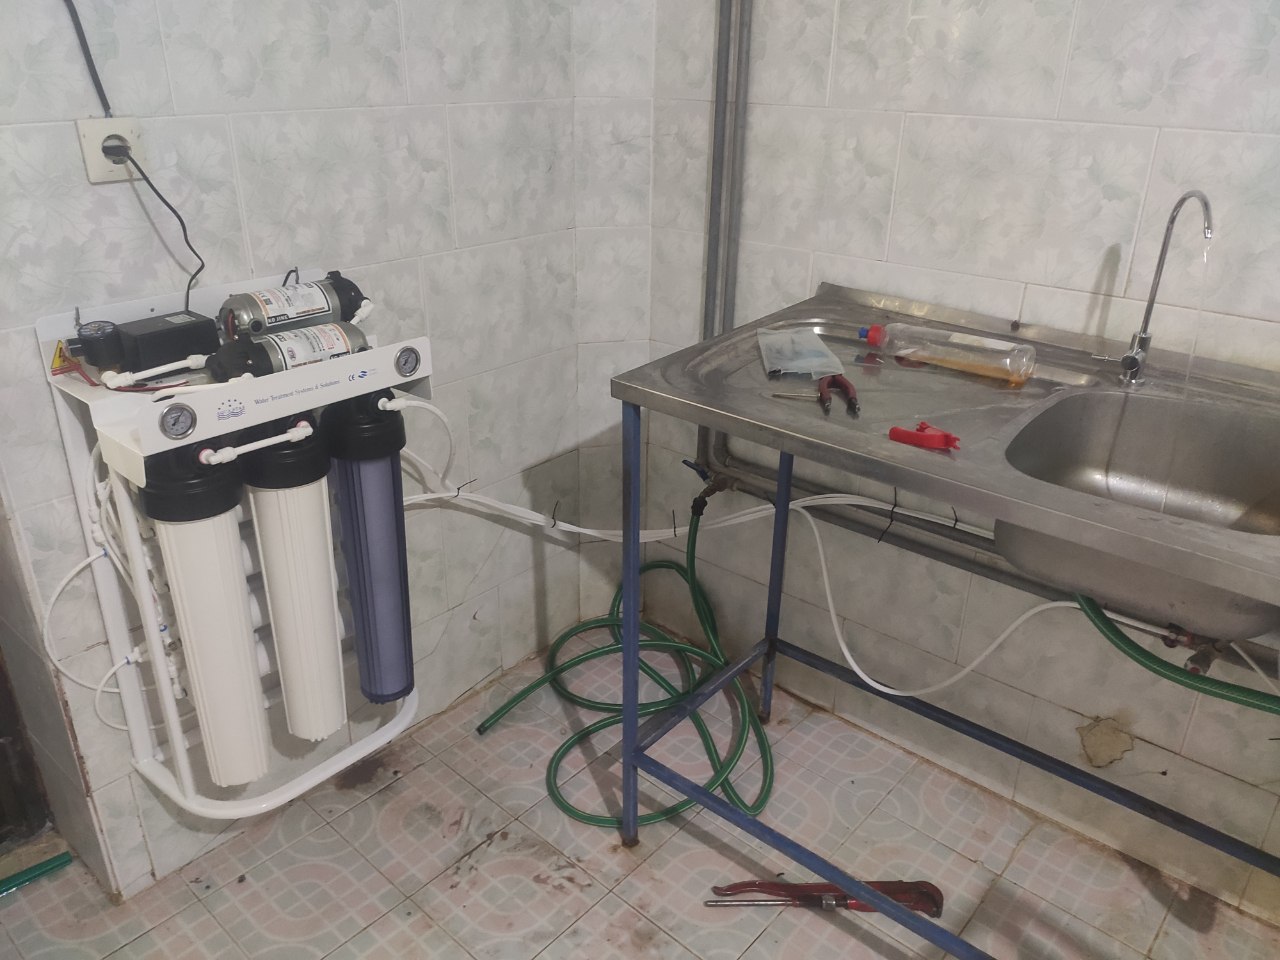 تصفیه آب نیمه صنعتی آکوا استار گارانتی 1 ساله با نصب رایگان